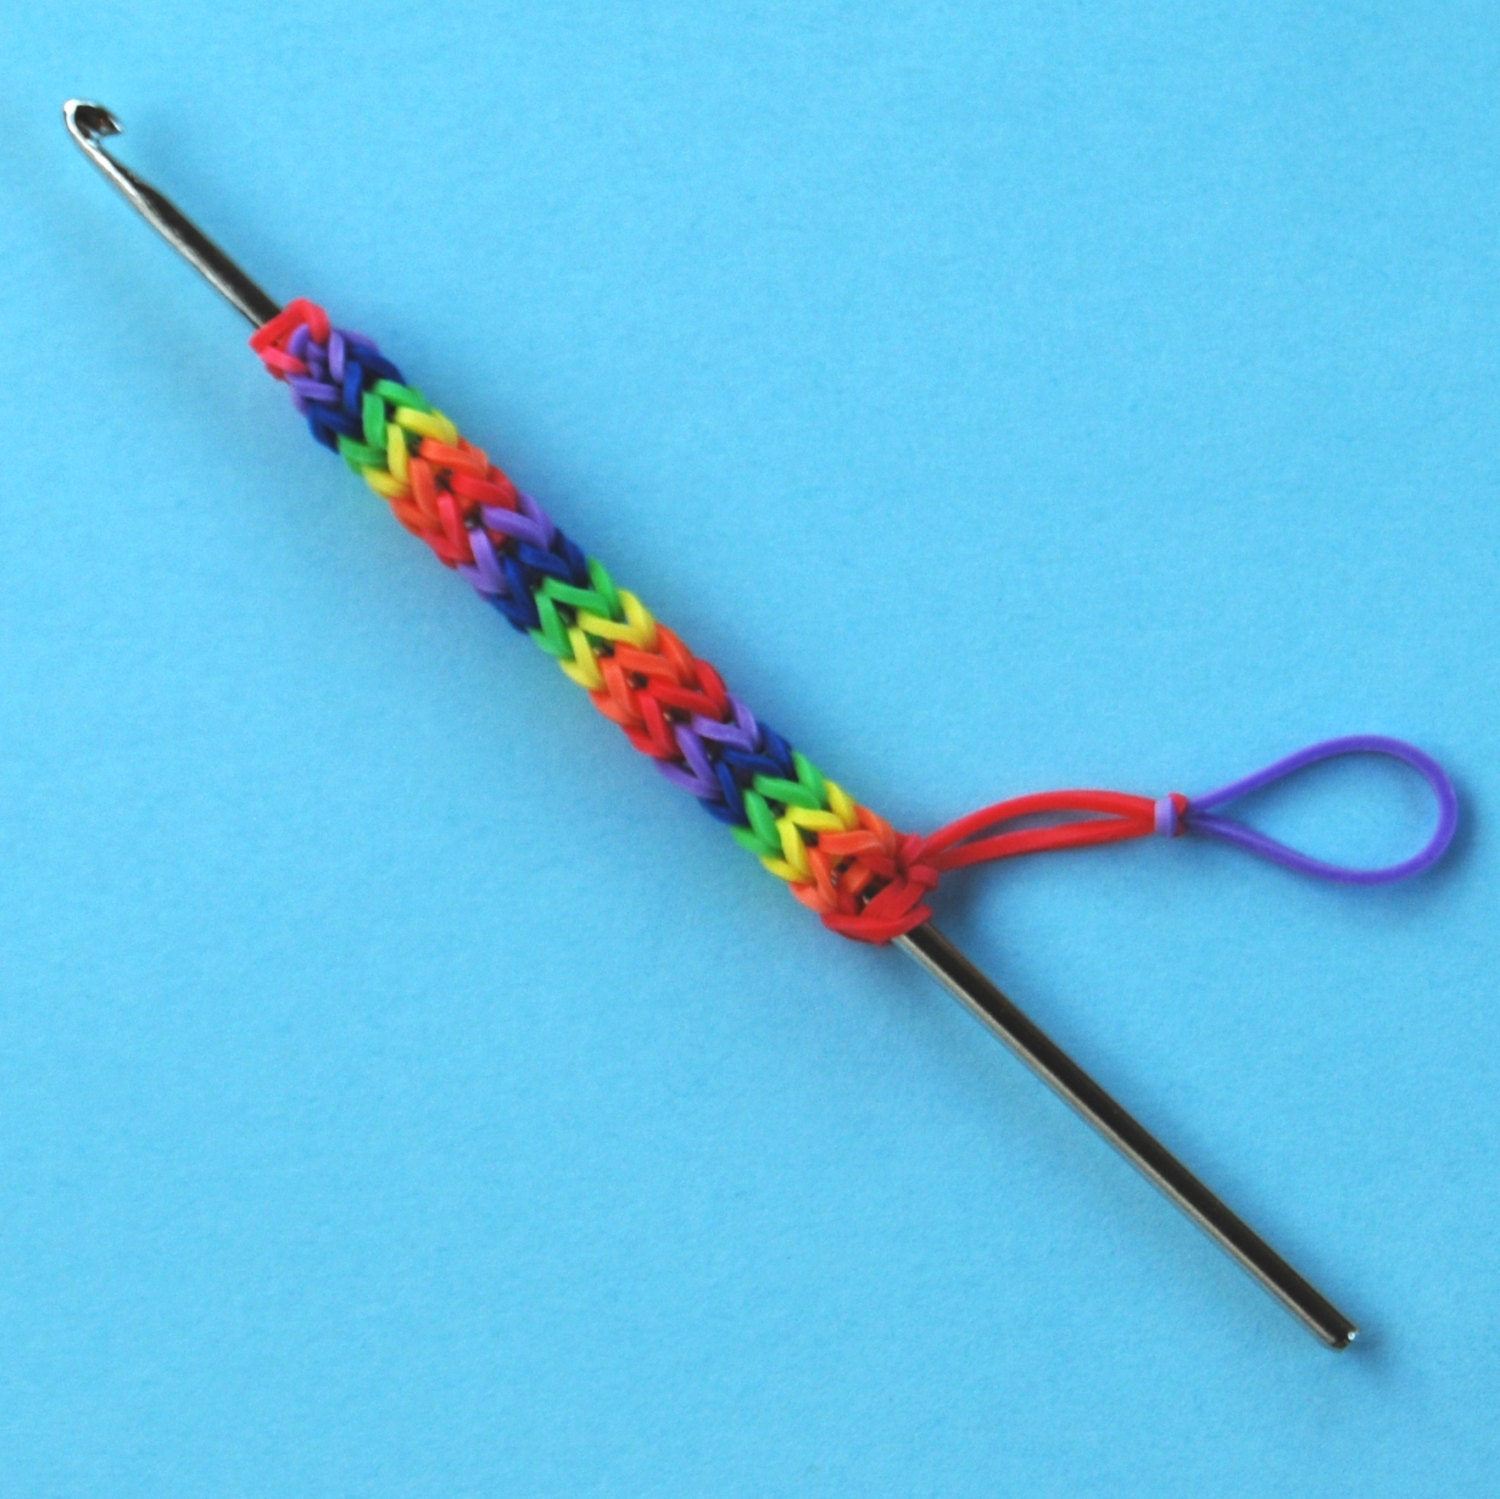 12 Pack: Rainbow Loom® with Metal Hook